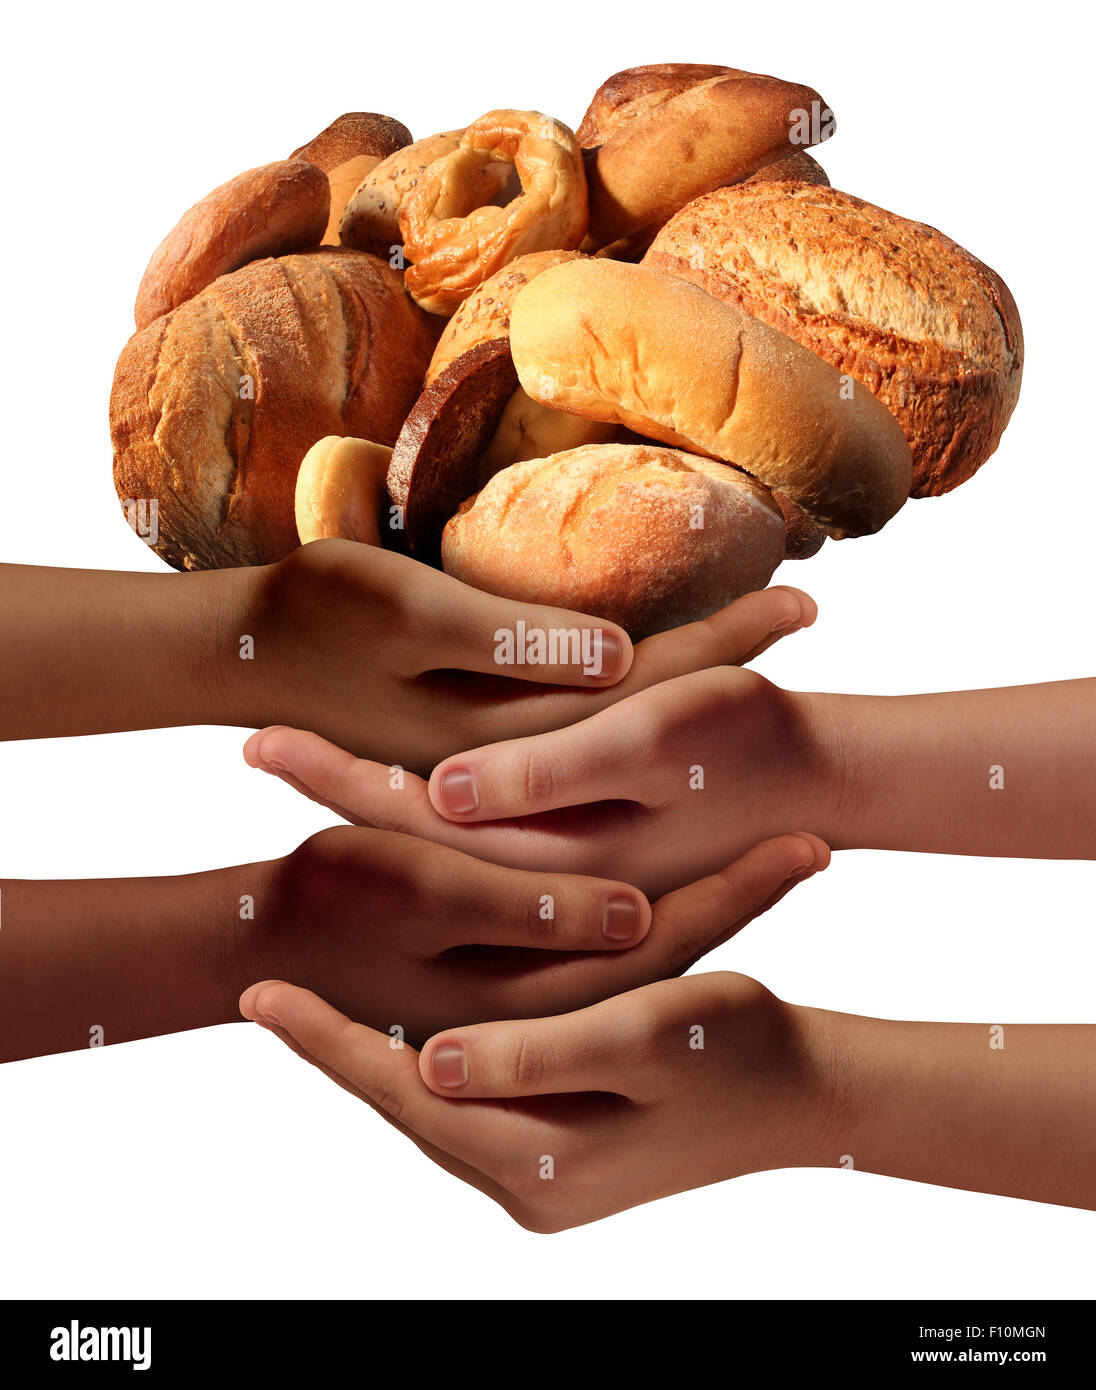 Nourrir les pauvres de la communauté concept d'assistance avec un groupe de mains de bienfaisance représentant divers groupes de personnes collaborant ensemble pour fournir du pain ou de la nourriture à l'affamé et les nécessiteux de la société. Banque D'Images